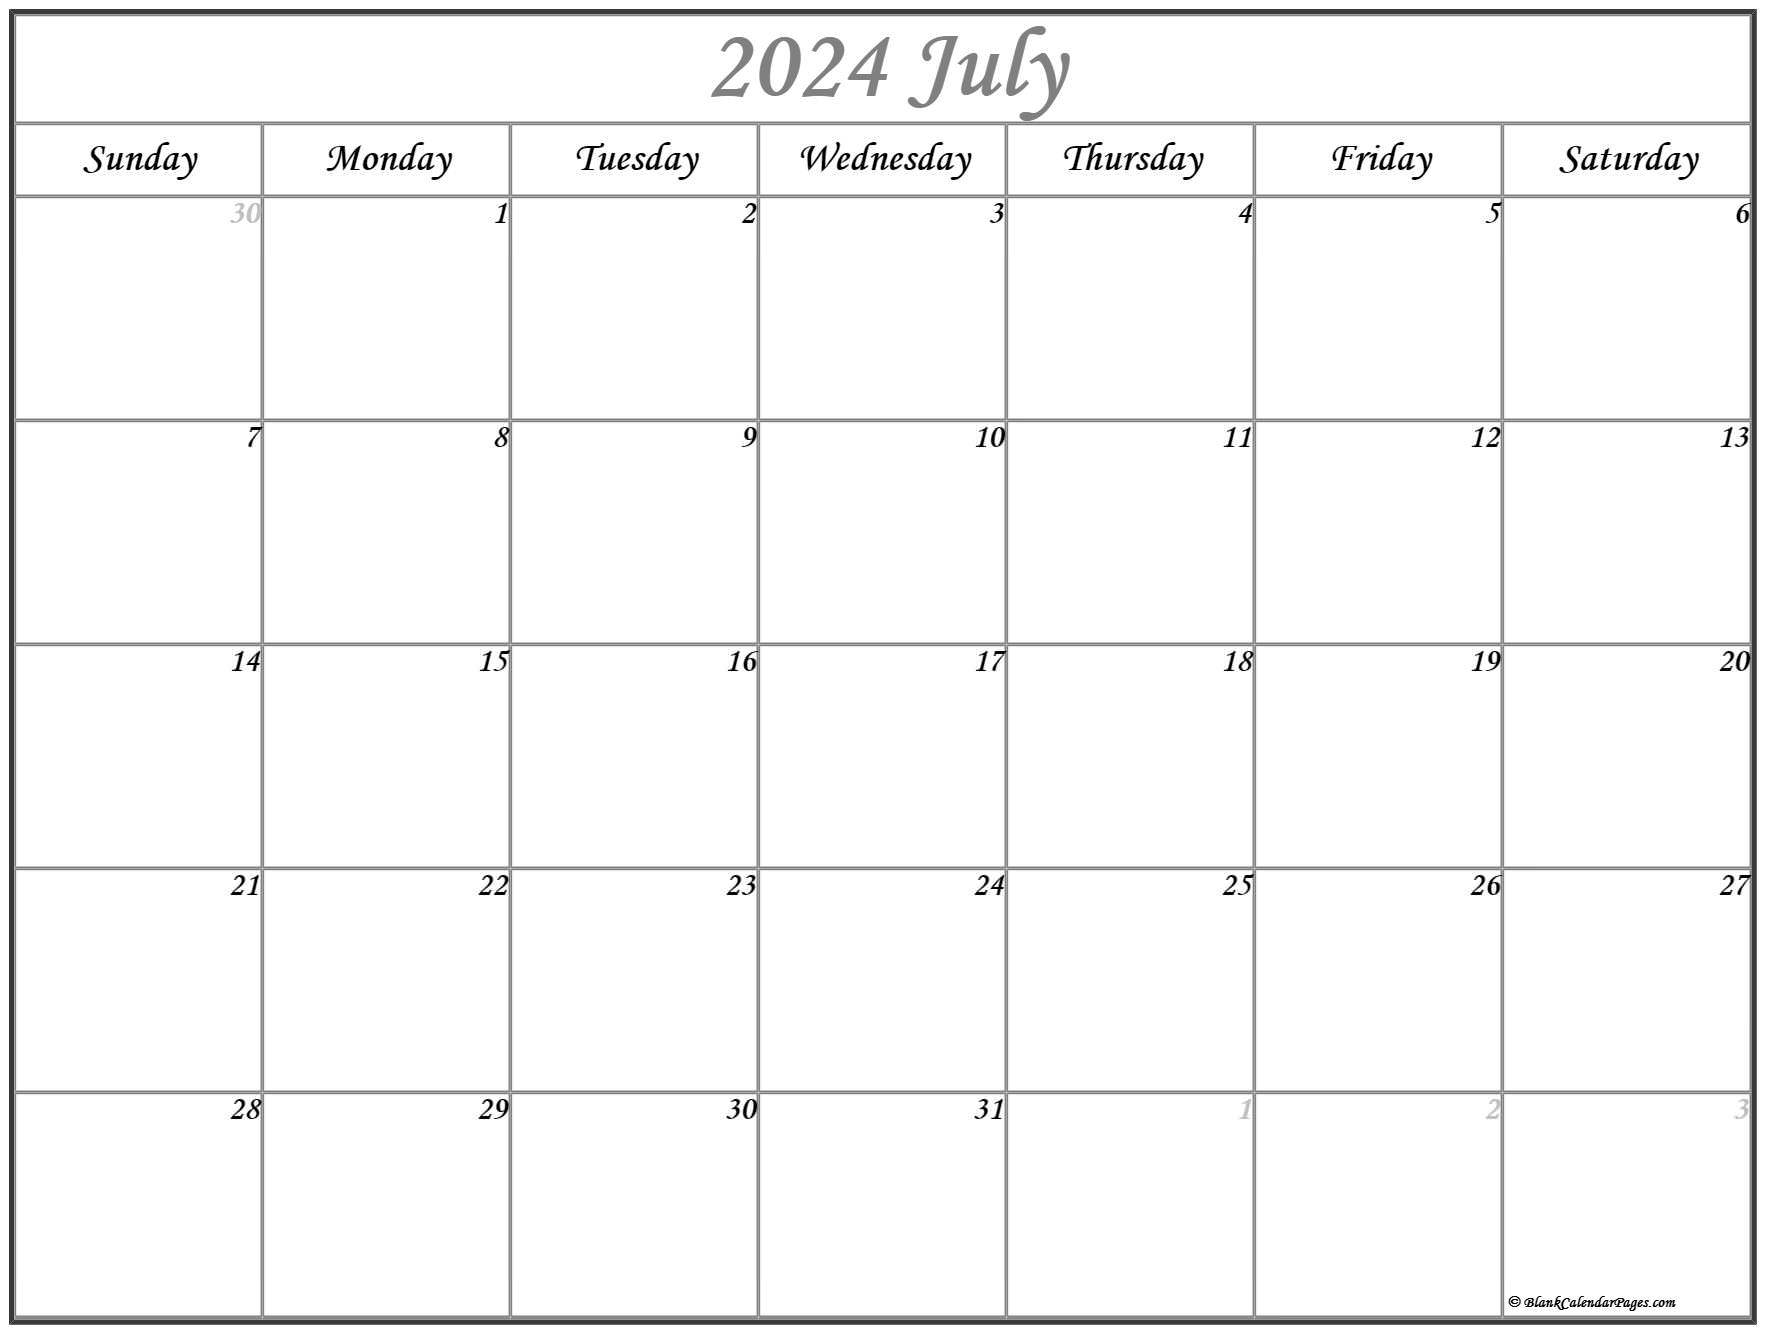 2023-july-calendar-july-calendar-2023-july-2023-calendar-july-2023